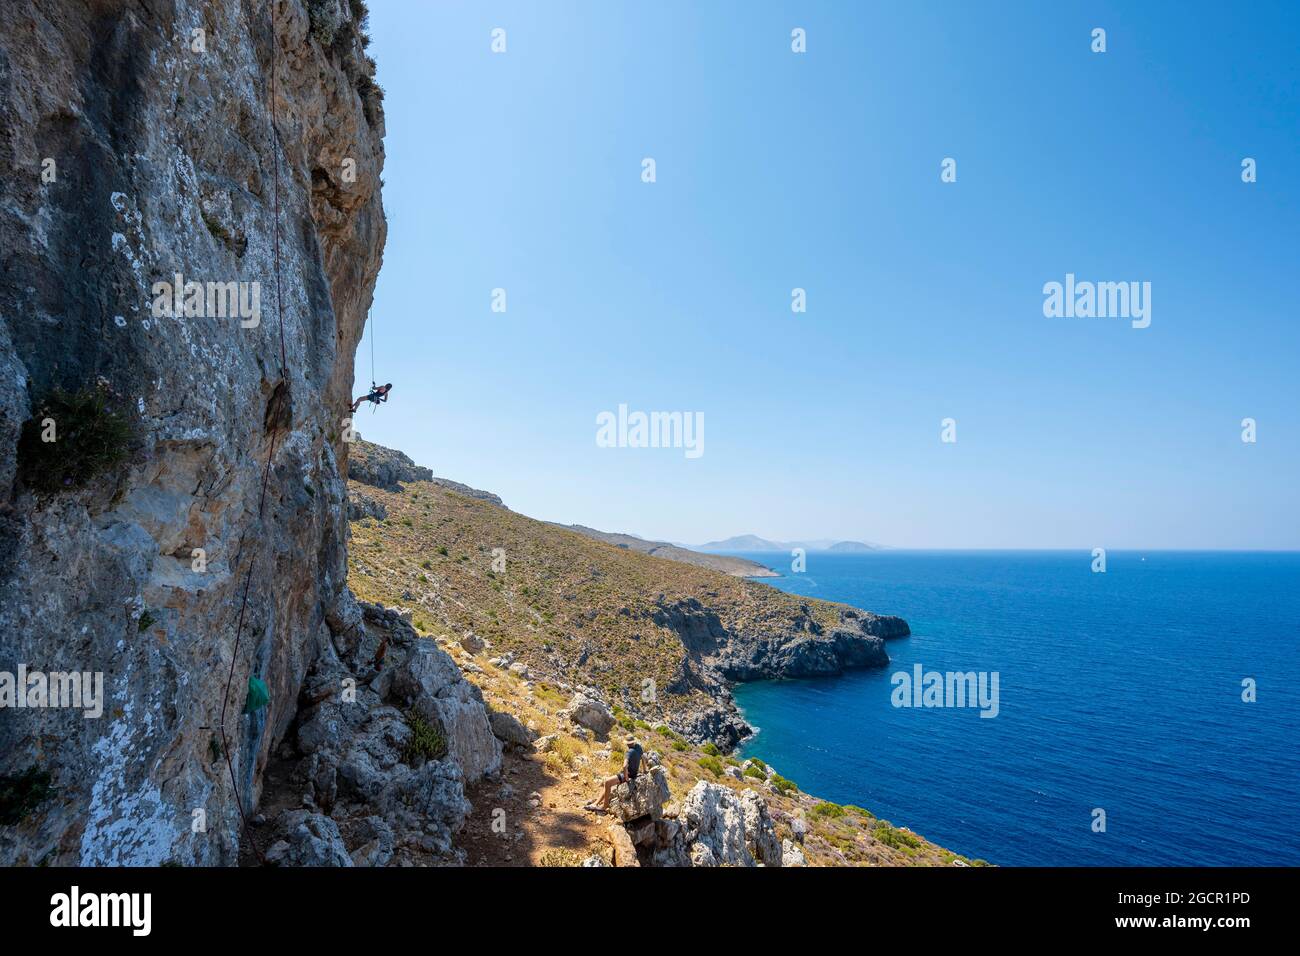 Escalade sur une face rocheuse, descente en rappel des grimpeurs, escalade sportive, Kalymnos, Dodécanèse, Grèce Banque D'Images